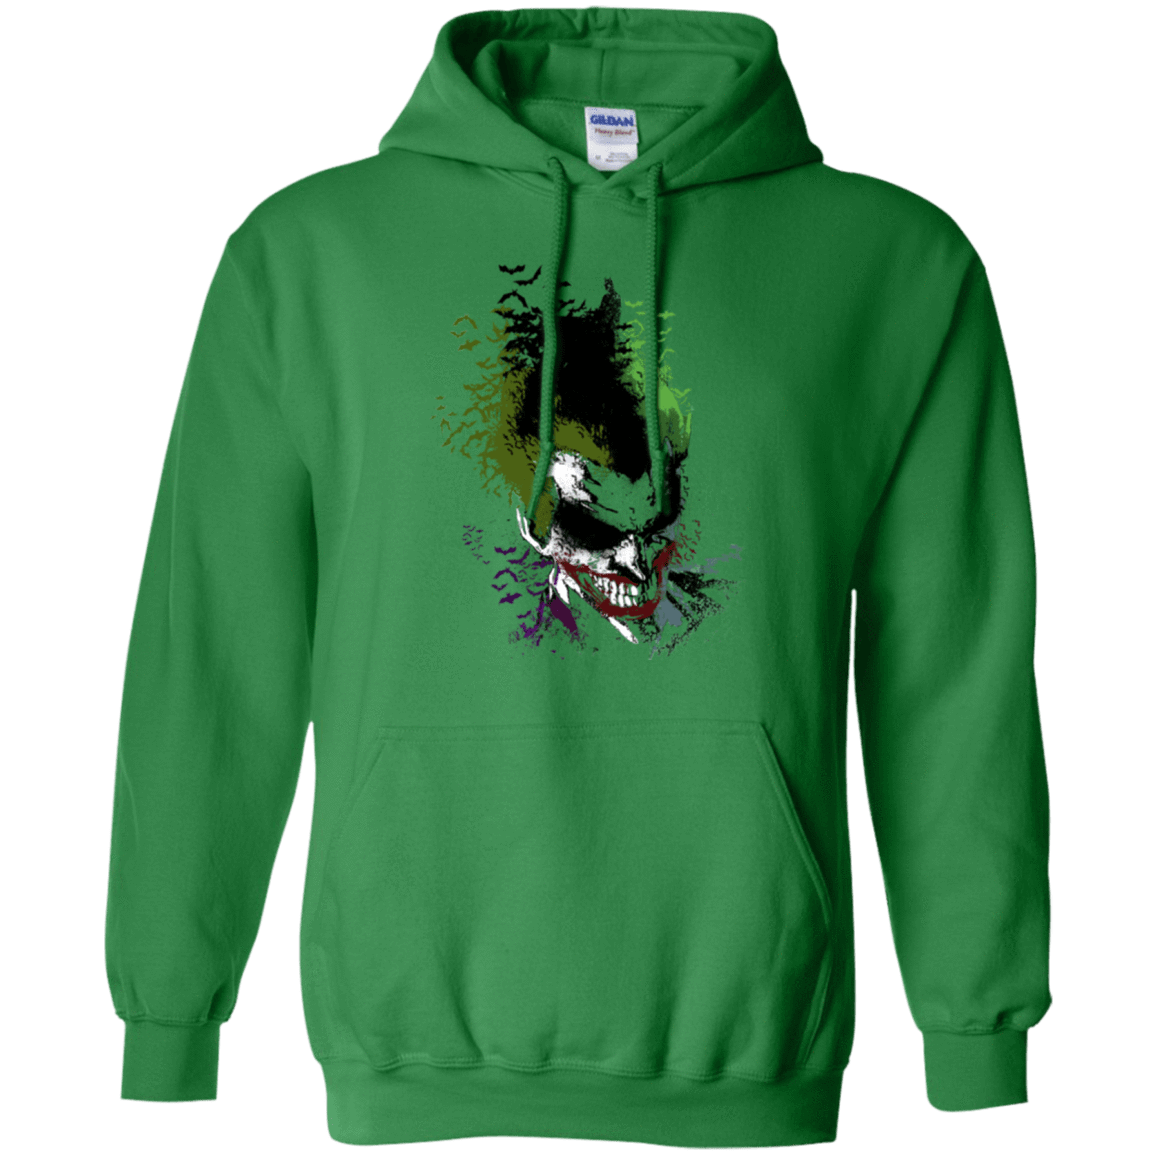 Sweatshirts Irish Green / Small Joker 2 Pullover Hoodie